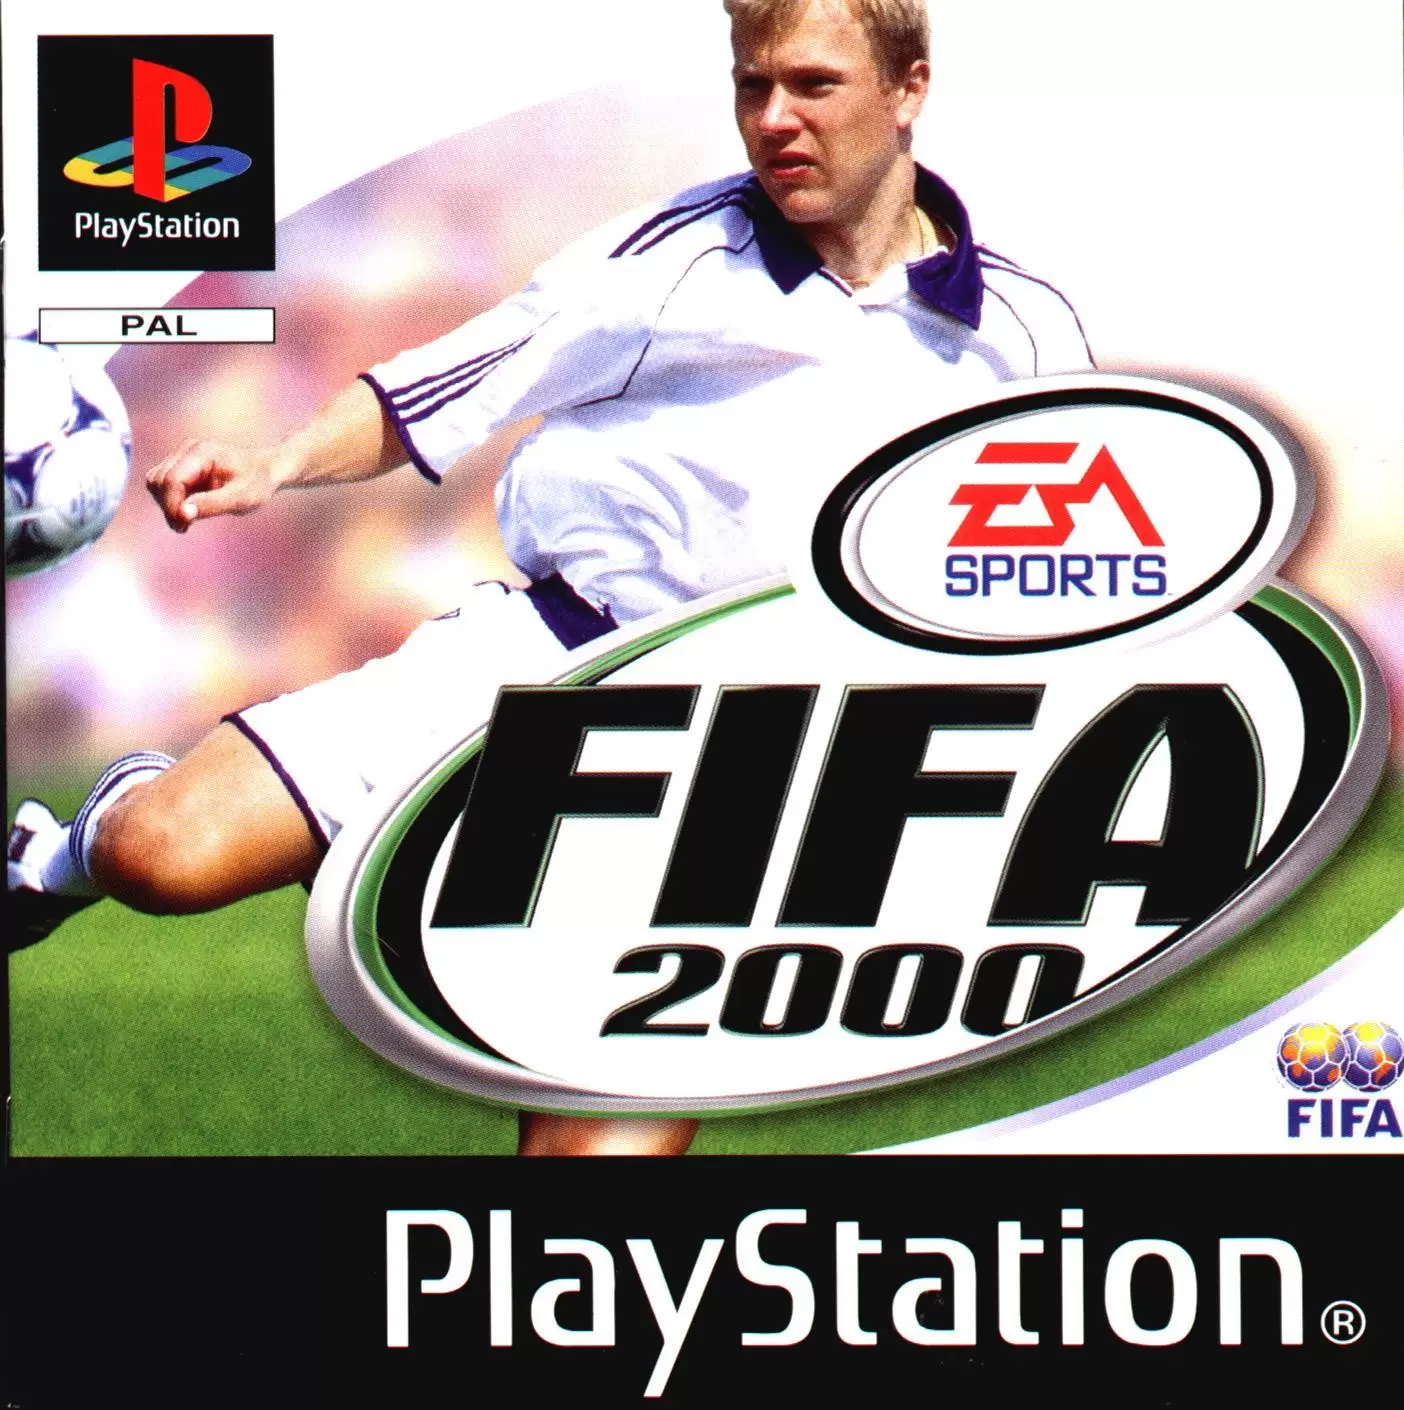 Playstation games - FIFA 2000